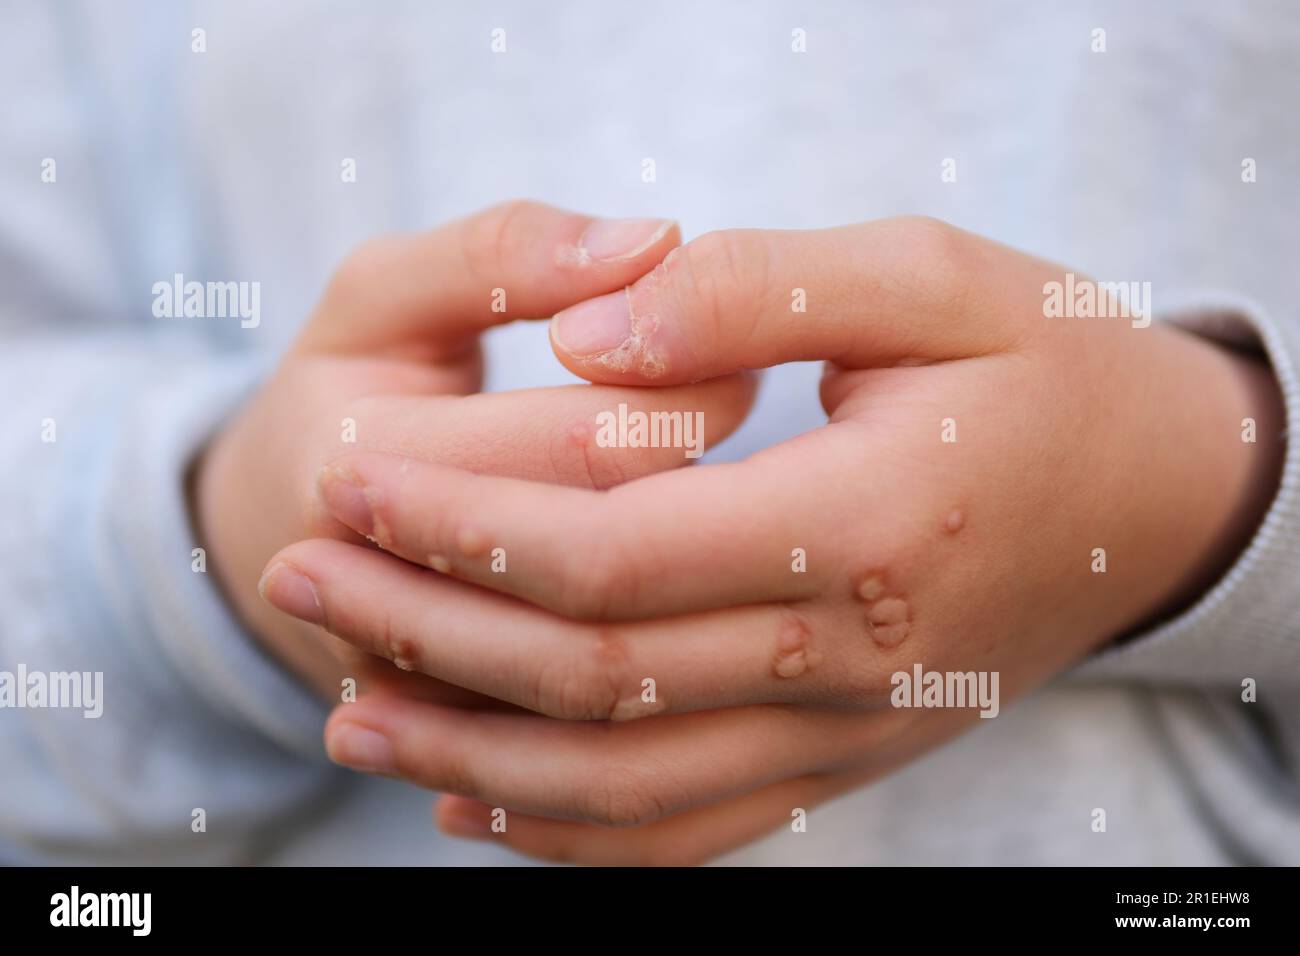 Hand mit Warze Mann Haut Nahaufnahme Hände von jungen Teenager Mädchen sind mit Warzen übersät eine Menge Papillome Virusinfektion auf Händen Berührung Kratzer betrachten nahe Nagel Virusinfektion Wucherungen an Fingern Stockfoto